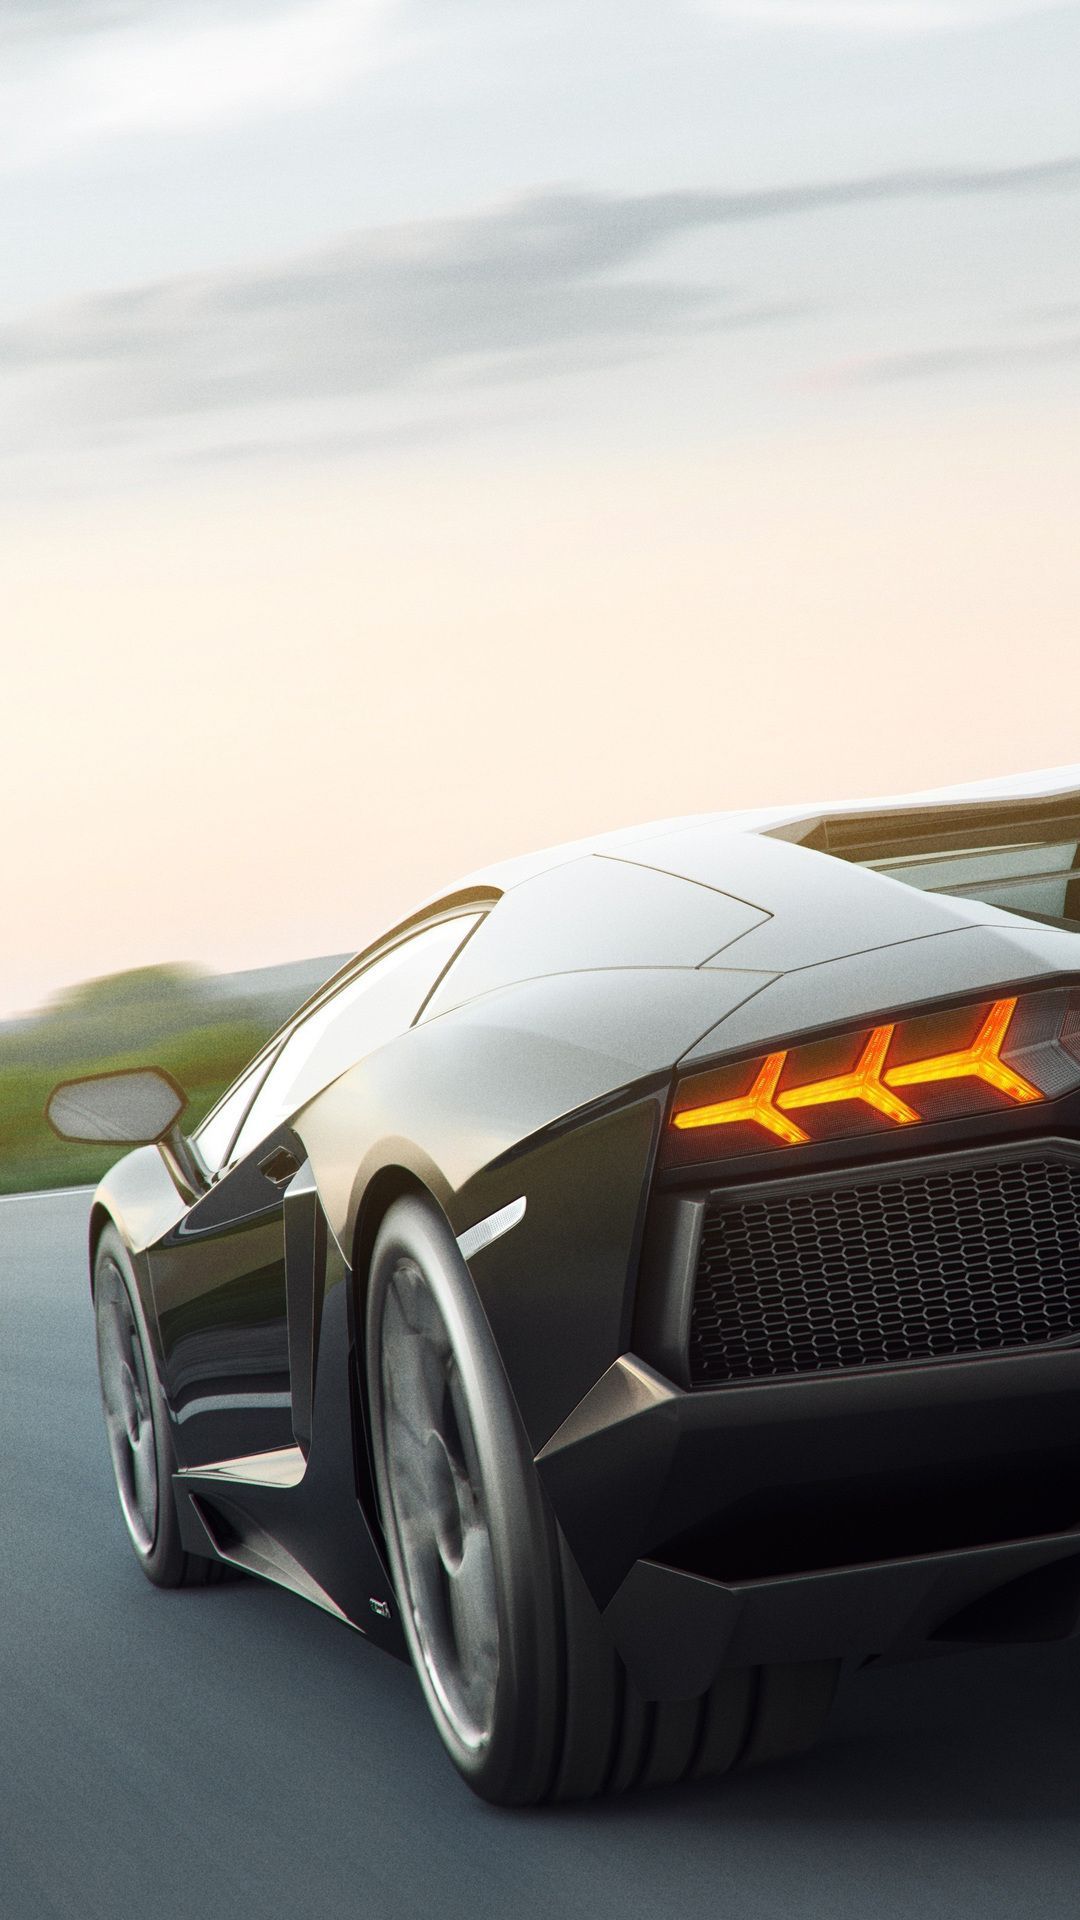 Cars #Black Lamborghini #wallpaper HD 4k background for android :). Black car wallpaper, Lamborghini wallpaper iphone, Android wallpaper cars